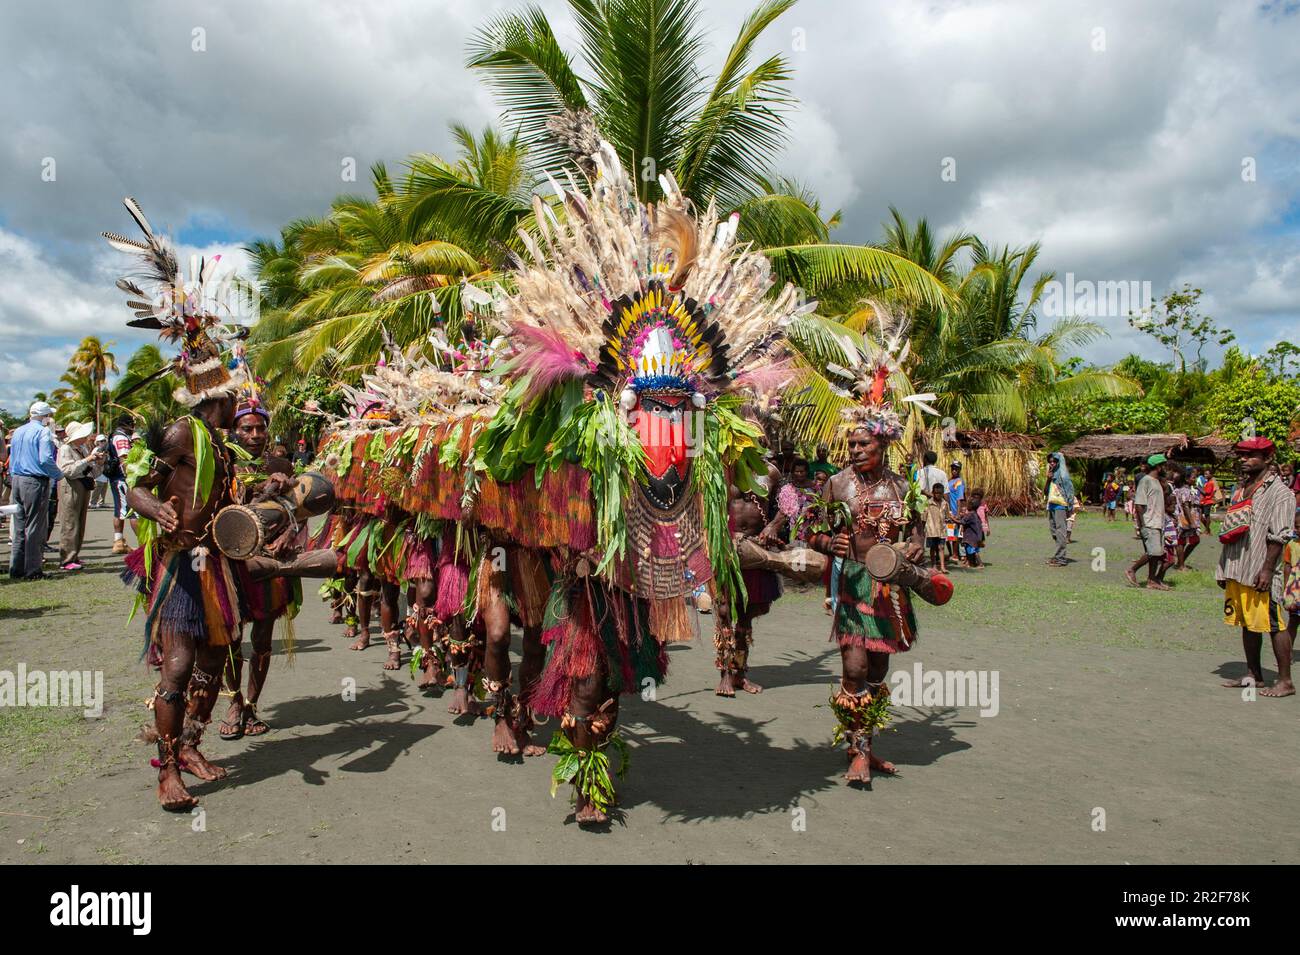 Männer in bunten Kostümen führen einen Folkloretanz auf, um Passagiere auf einem Expeditionsschiff in Kopar, East Sepik Province, Papua-Neuguinea, Sout, zu begrüßen Stockfoto